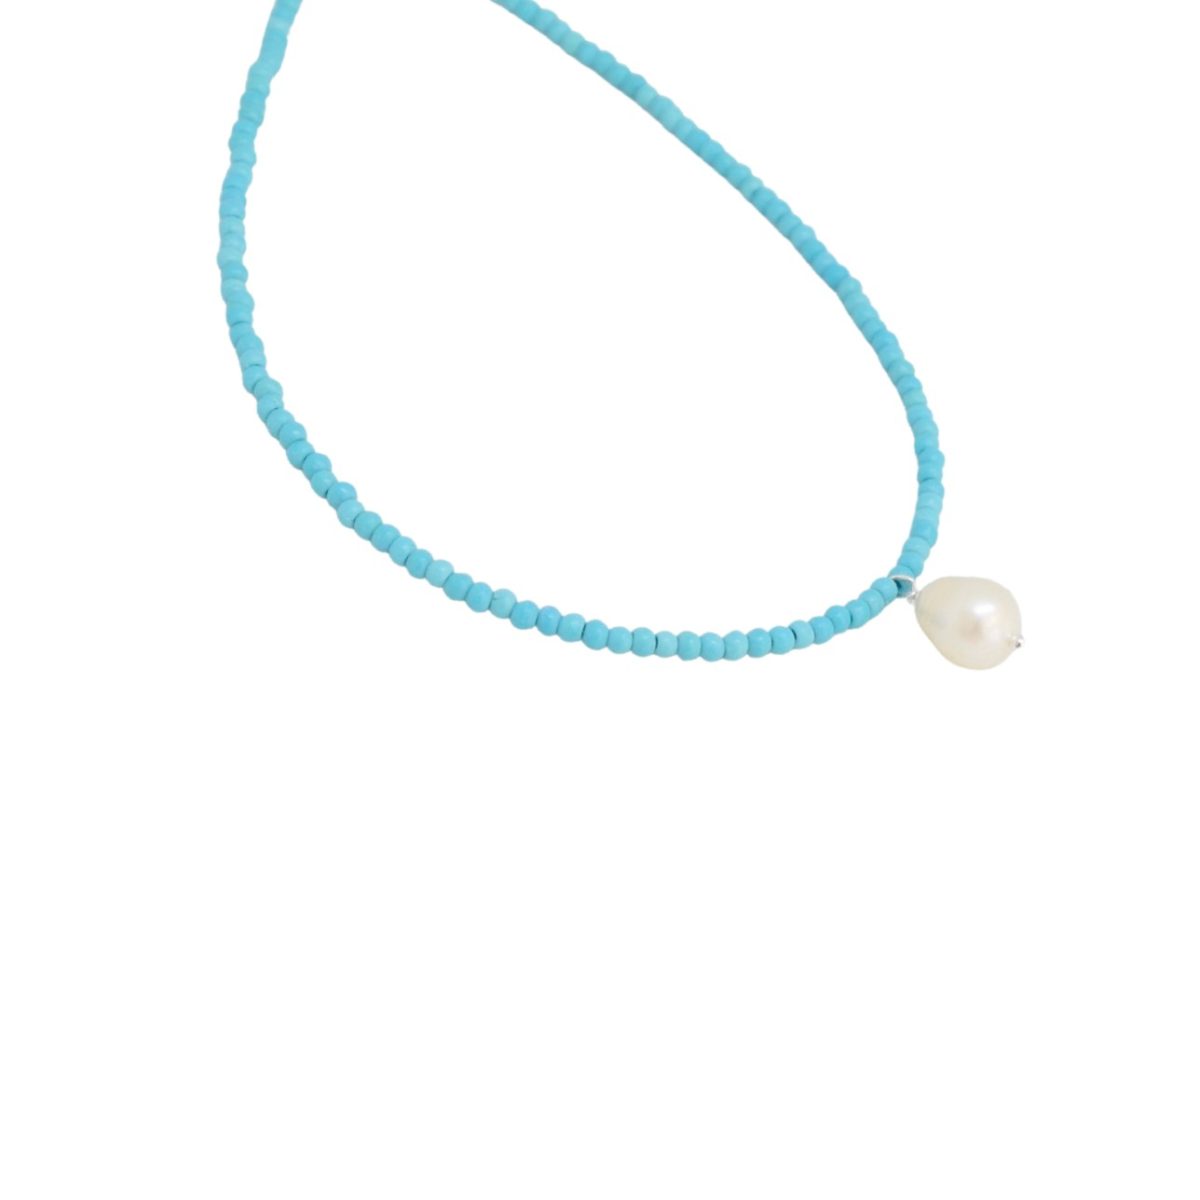 Aqua bracelet / anklet Aqua bracelet / anklet Aqua bracelet / anklet 4